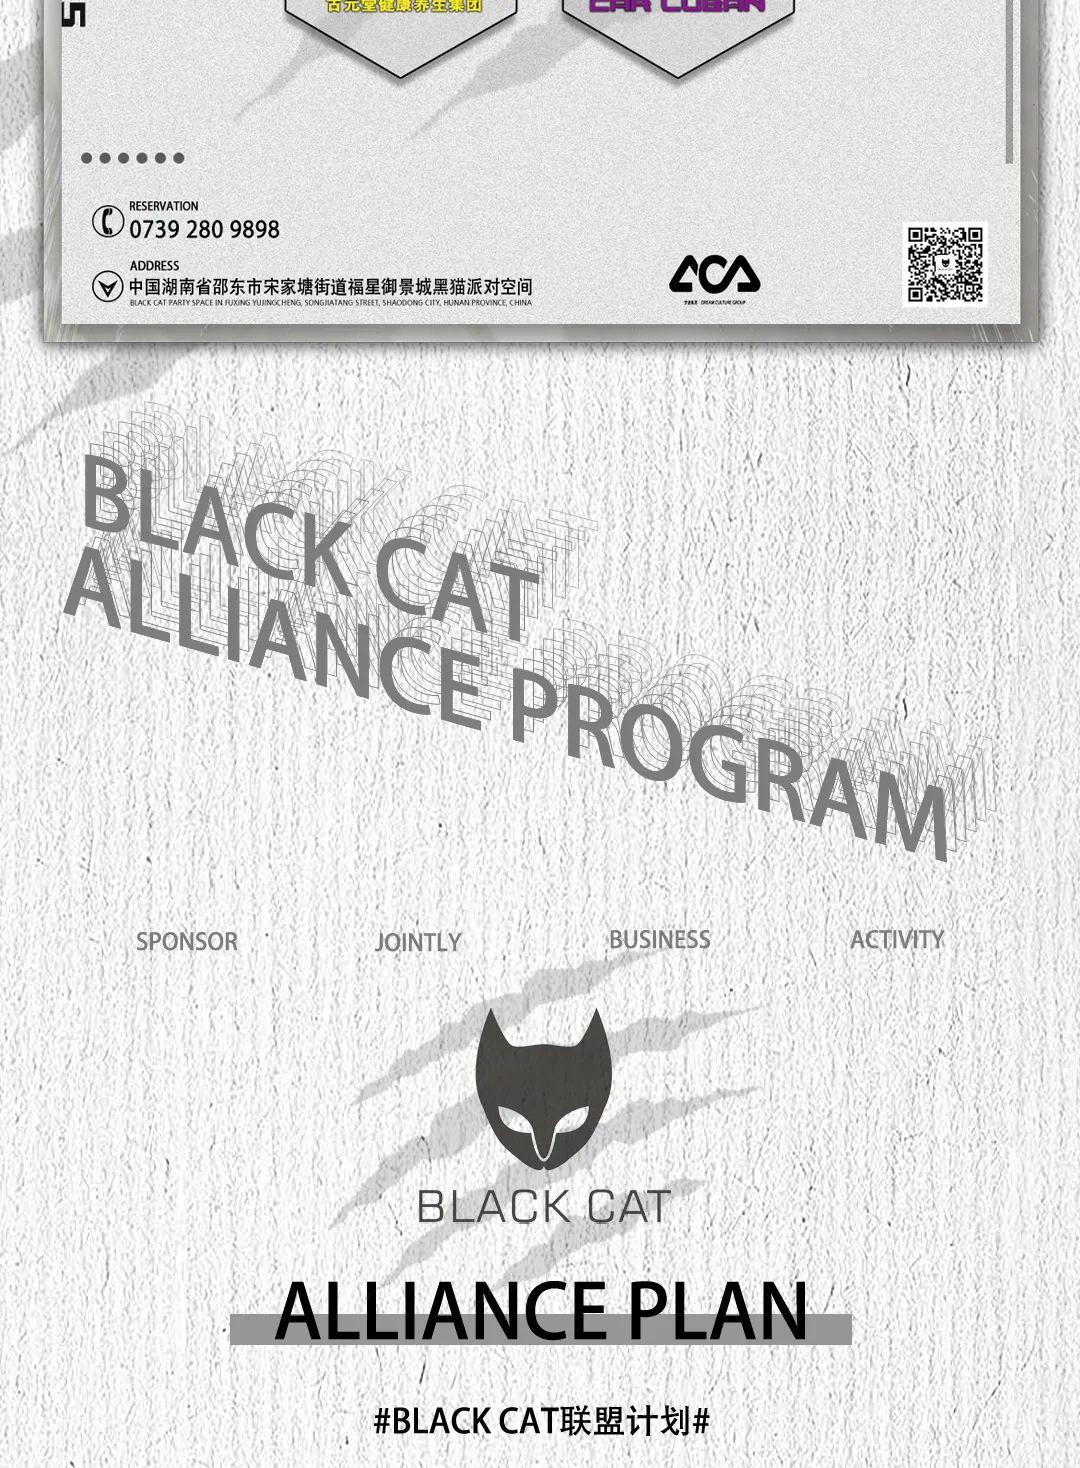 梦迪集团BLACK CAT邵东店丨10月25日#BLACK CAT联盟计划#-邵东邵东黑猫酒吧/BLACK CAT